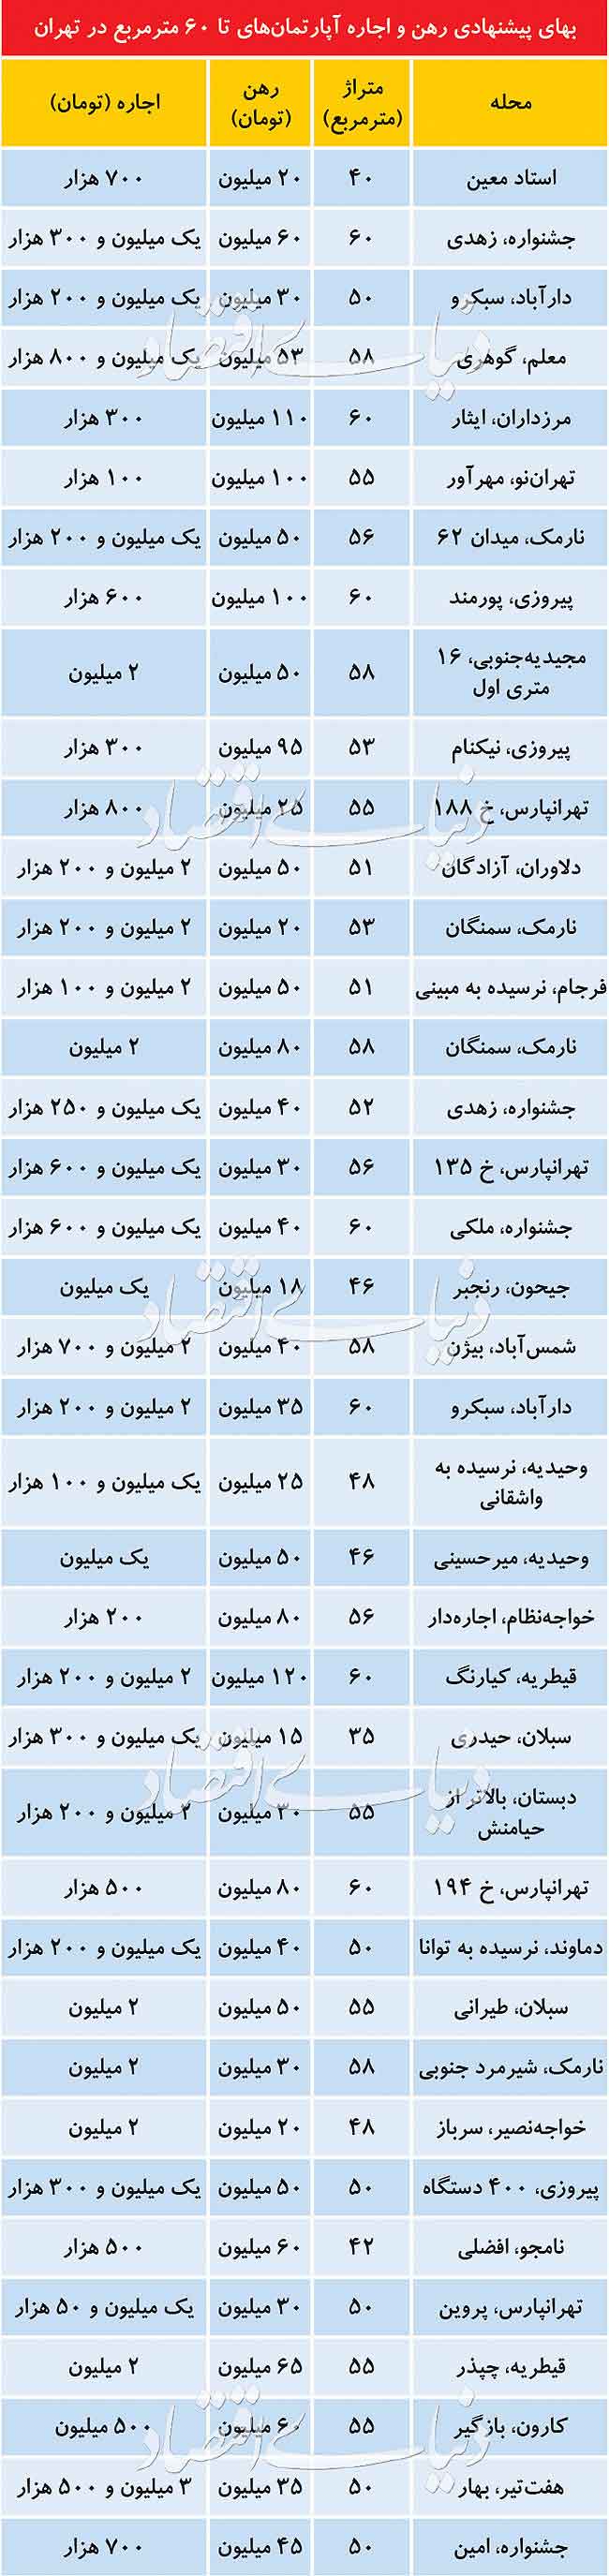 جدول مبالغ رهن و اجاره آپارتمانهای زیر 60 متر در مناطق مختلف تهران